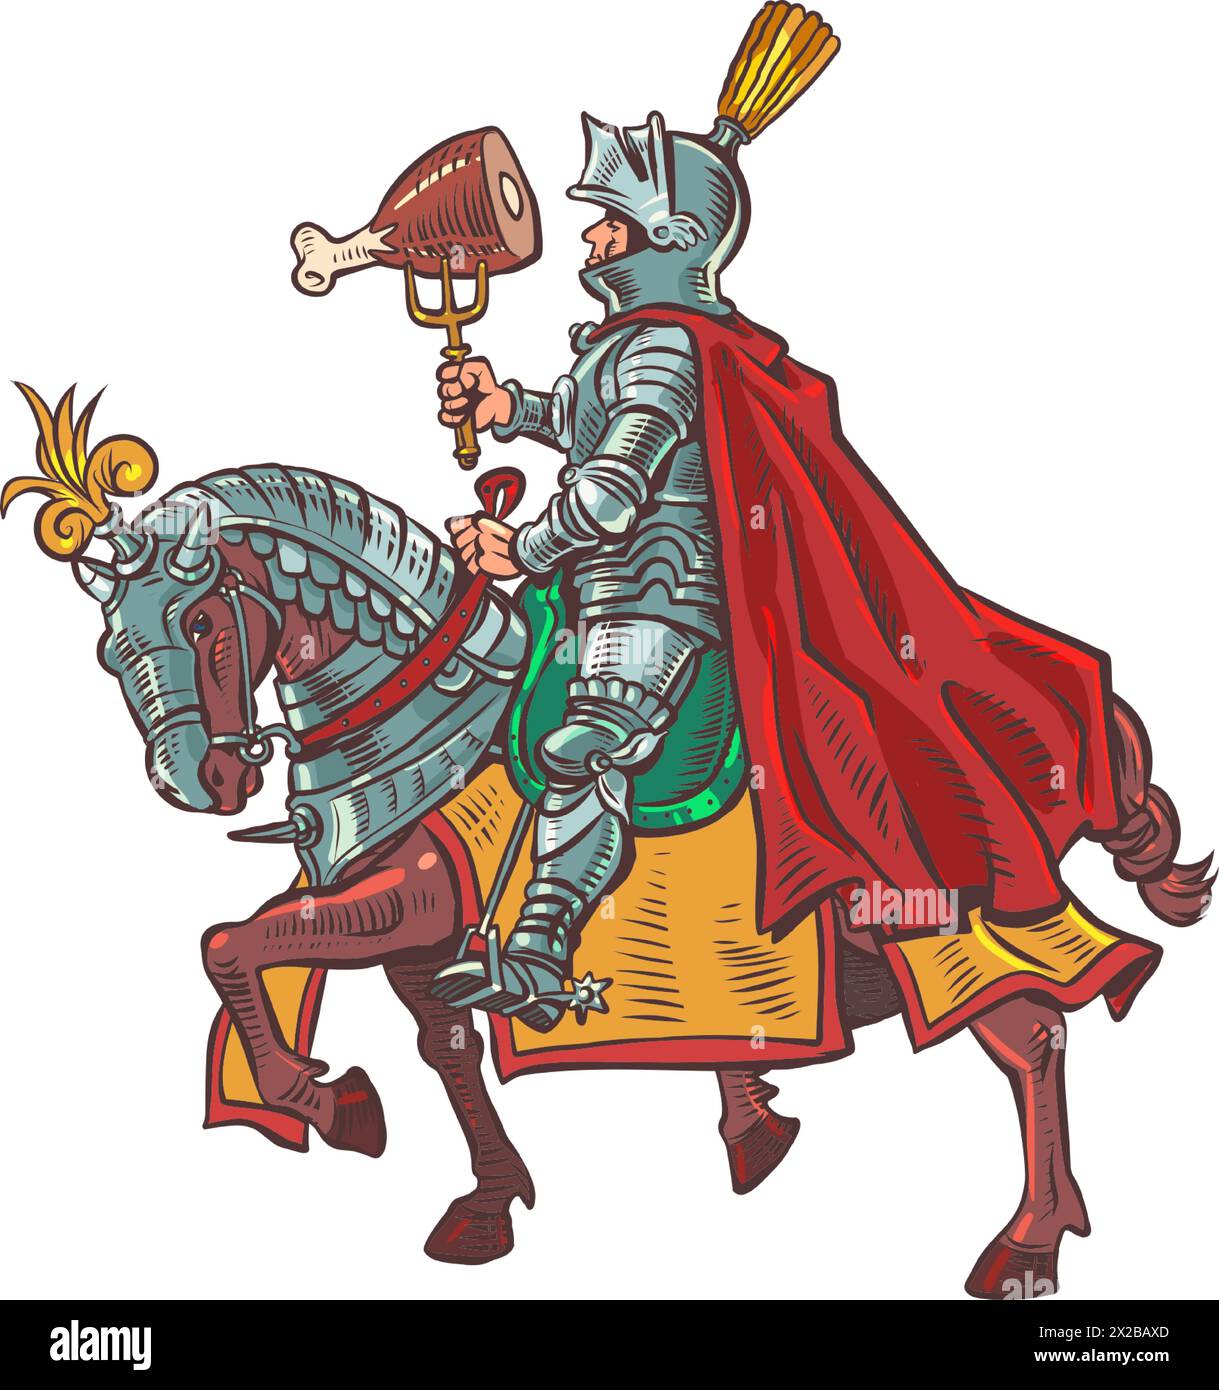 Ein Ritter in Rüstung auf einem gepanzerten Pferd hält Fleisch auf einer Gabel. Fleischmenü in einer Taverne, Pub oder Bar. Ein mittelalterlicher Snack in der modernen Welt. Auf weißem Hintergrund Stock Vektor